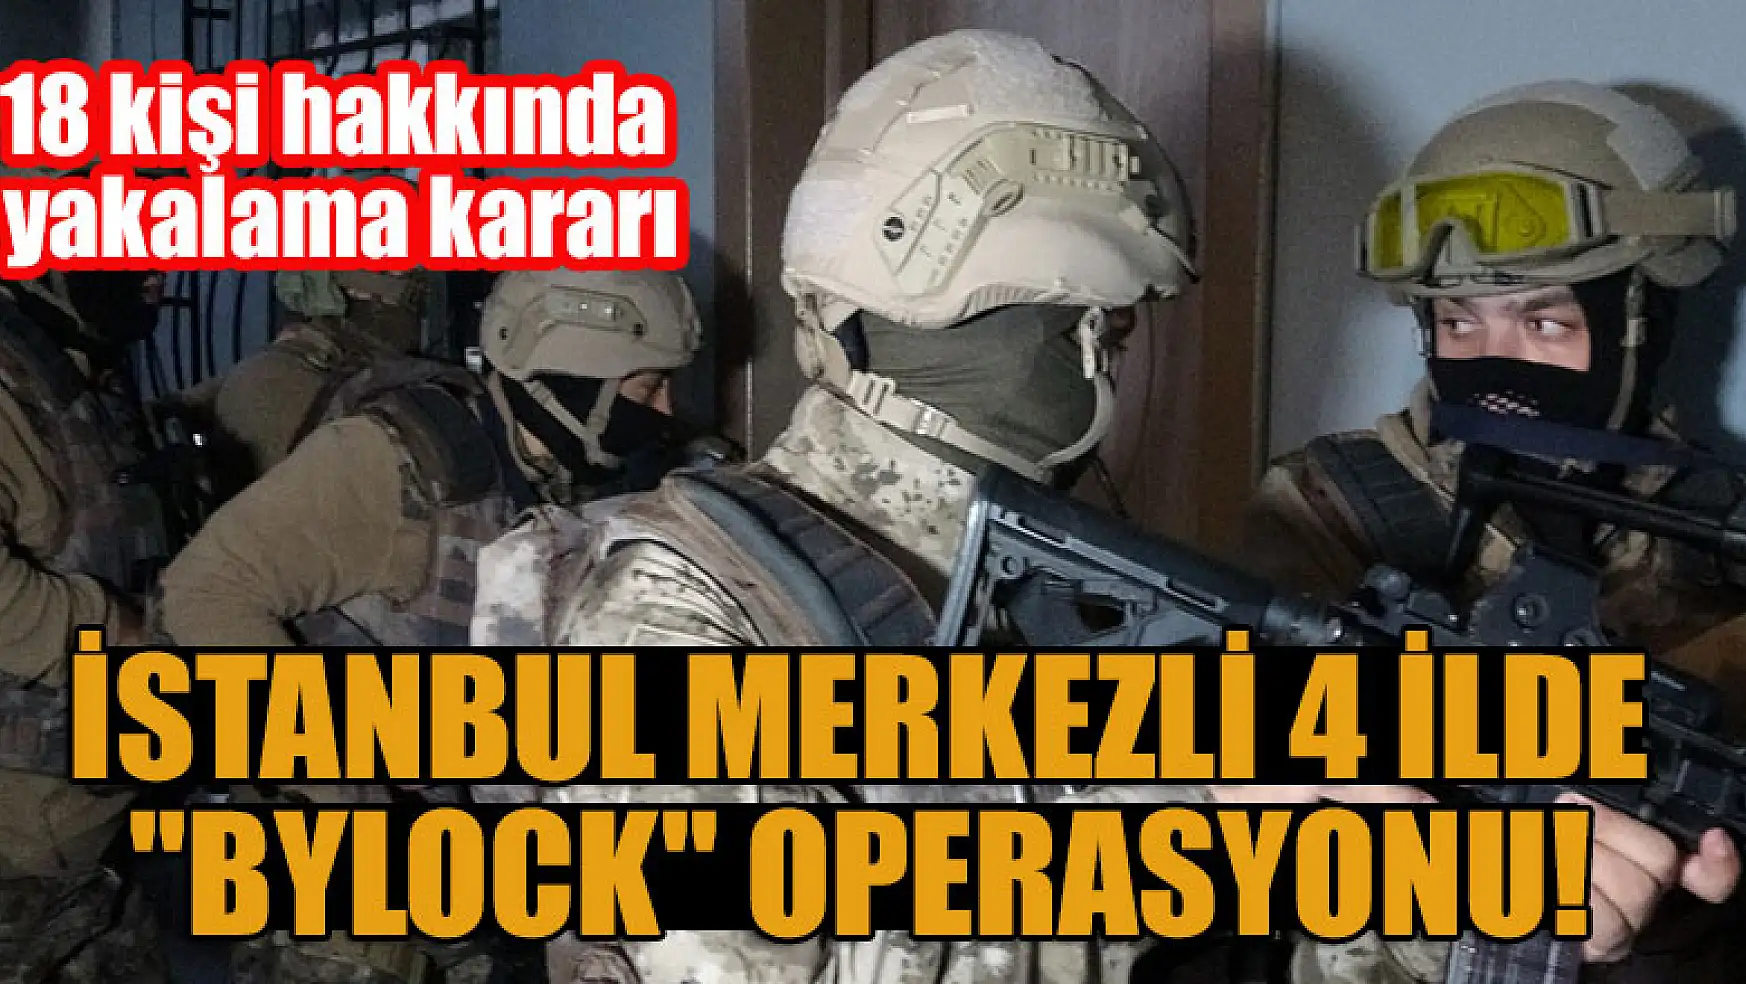 İstanbul merkezli 4 ilde 'ByLock' operasyonu! 18 kişi hakkında yakalama kararı